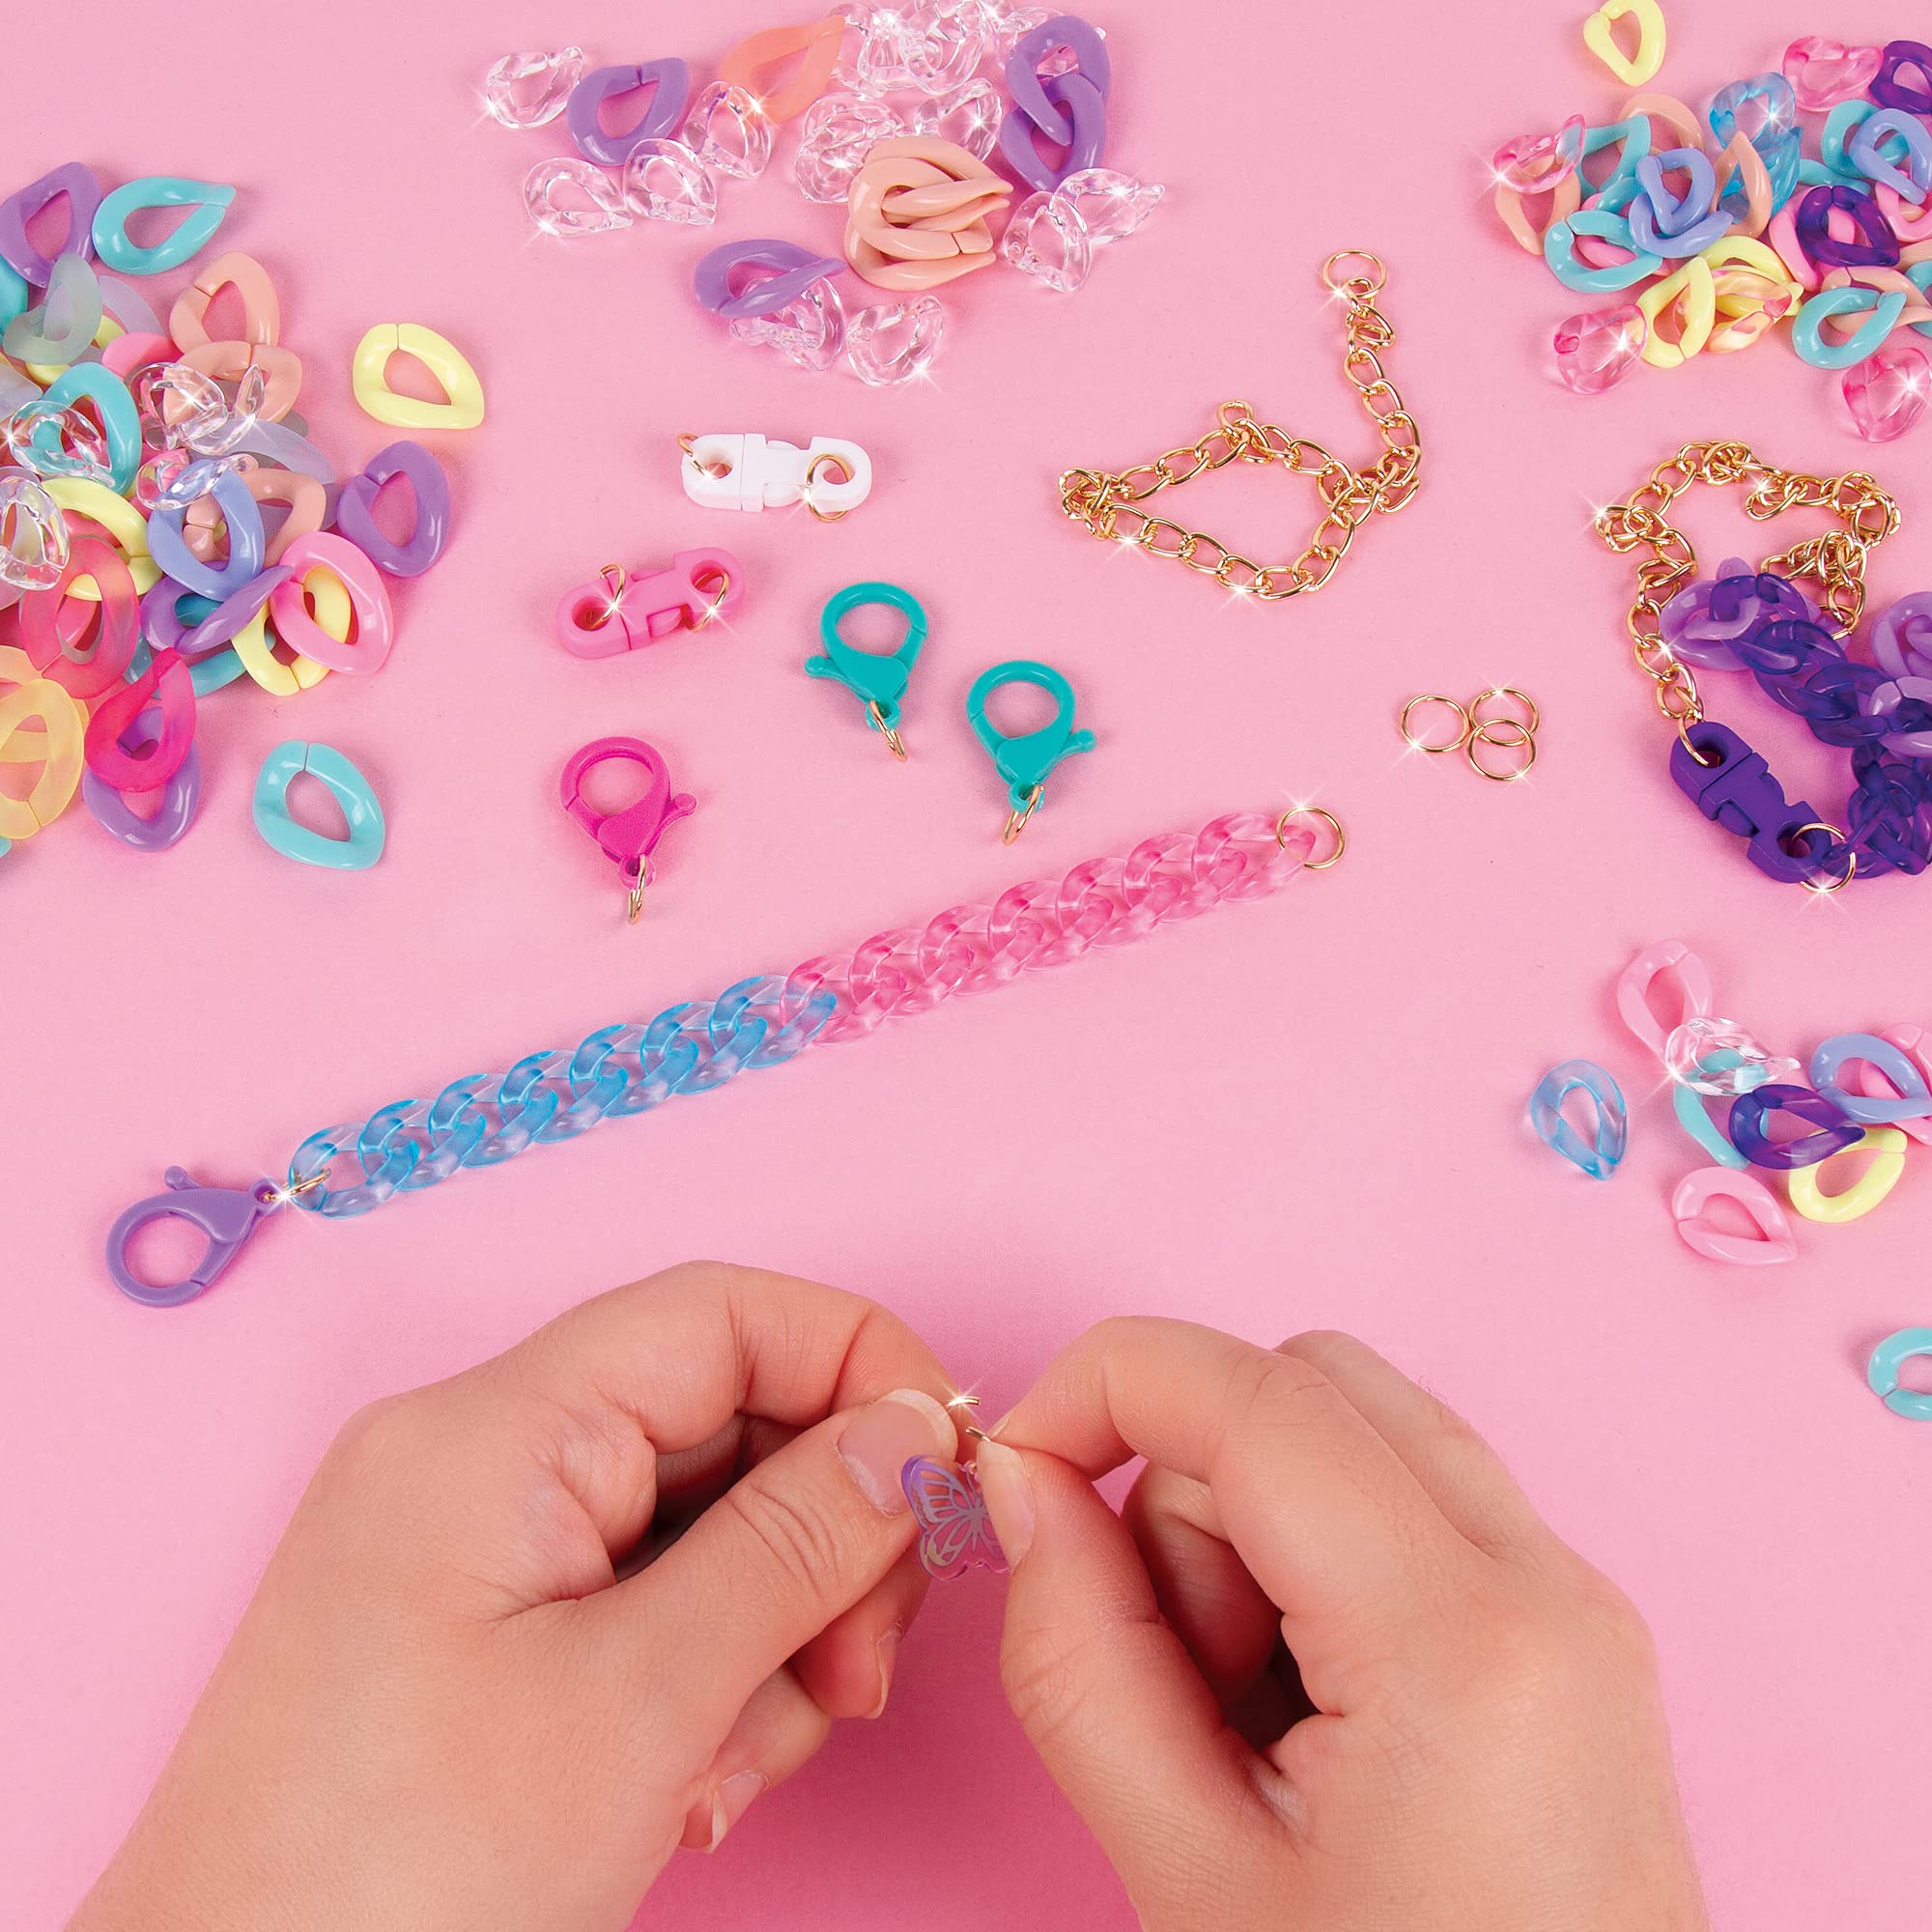 Make It Real All Linked Up Bracelet Making Kit - DIY Charm Bracelet Making Kit for Girls - Kids Bracelet Making Kit for Teen Girls - Jewelry Making Kit for Girls 8-12 - Craft Kit Gifts for Girls